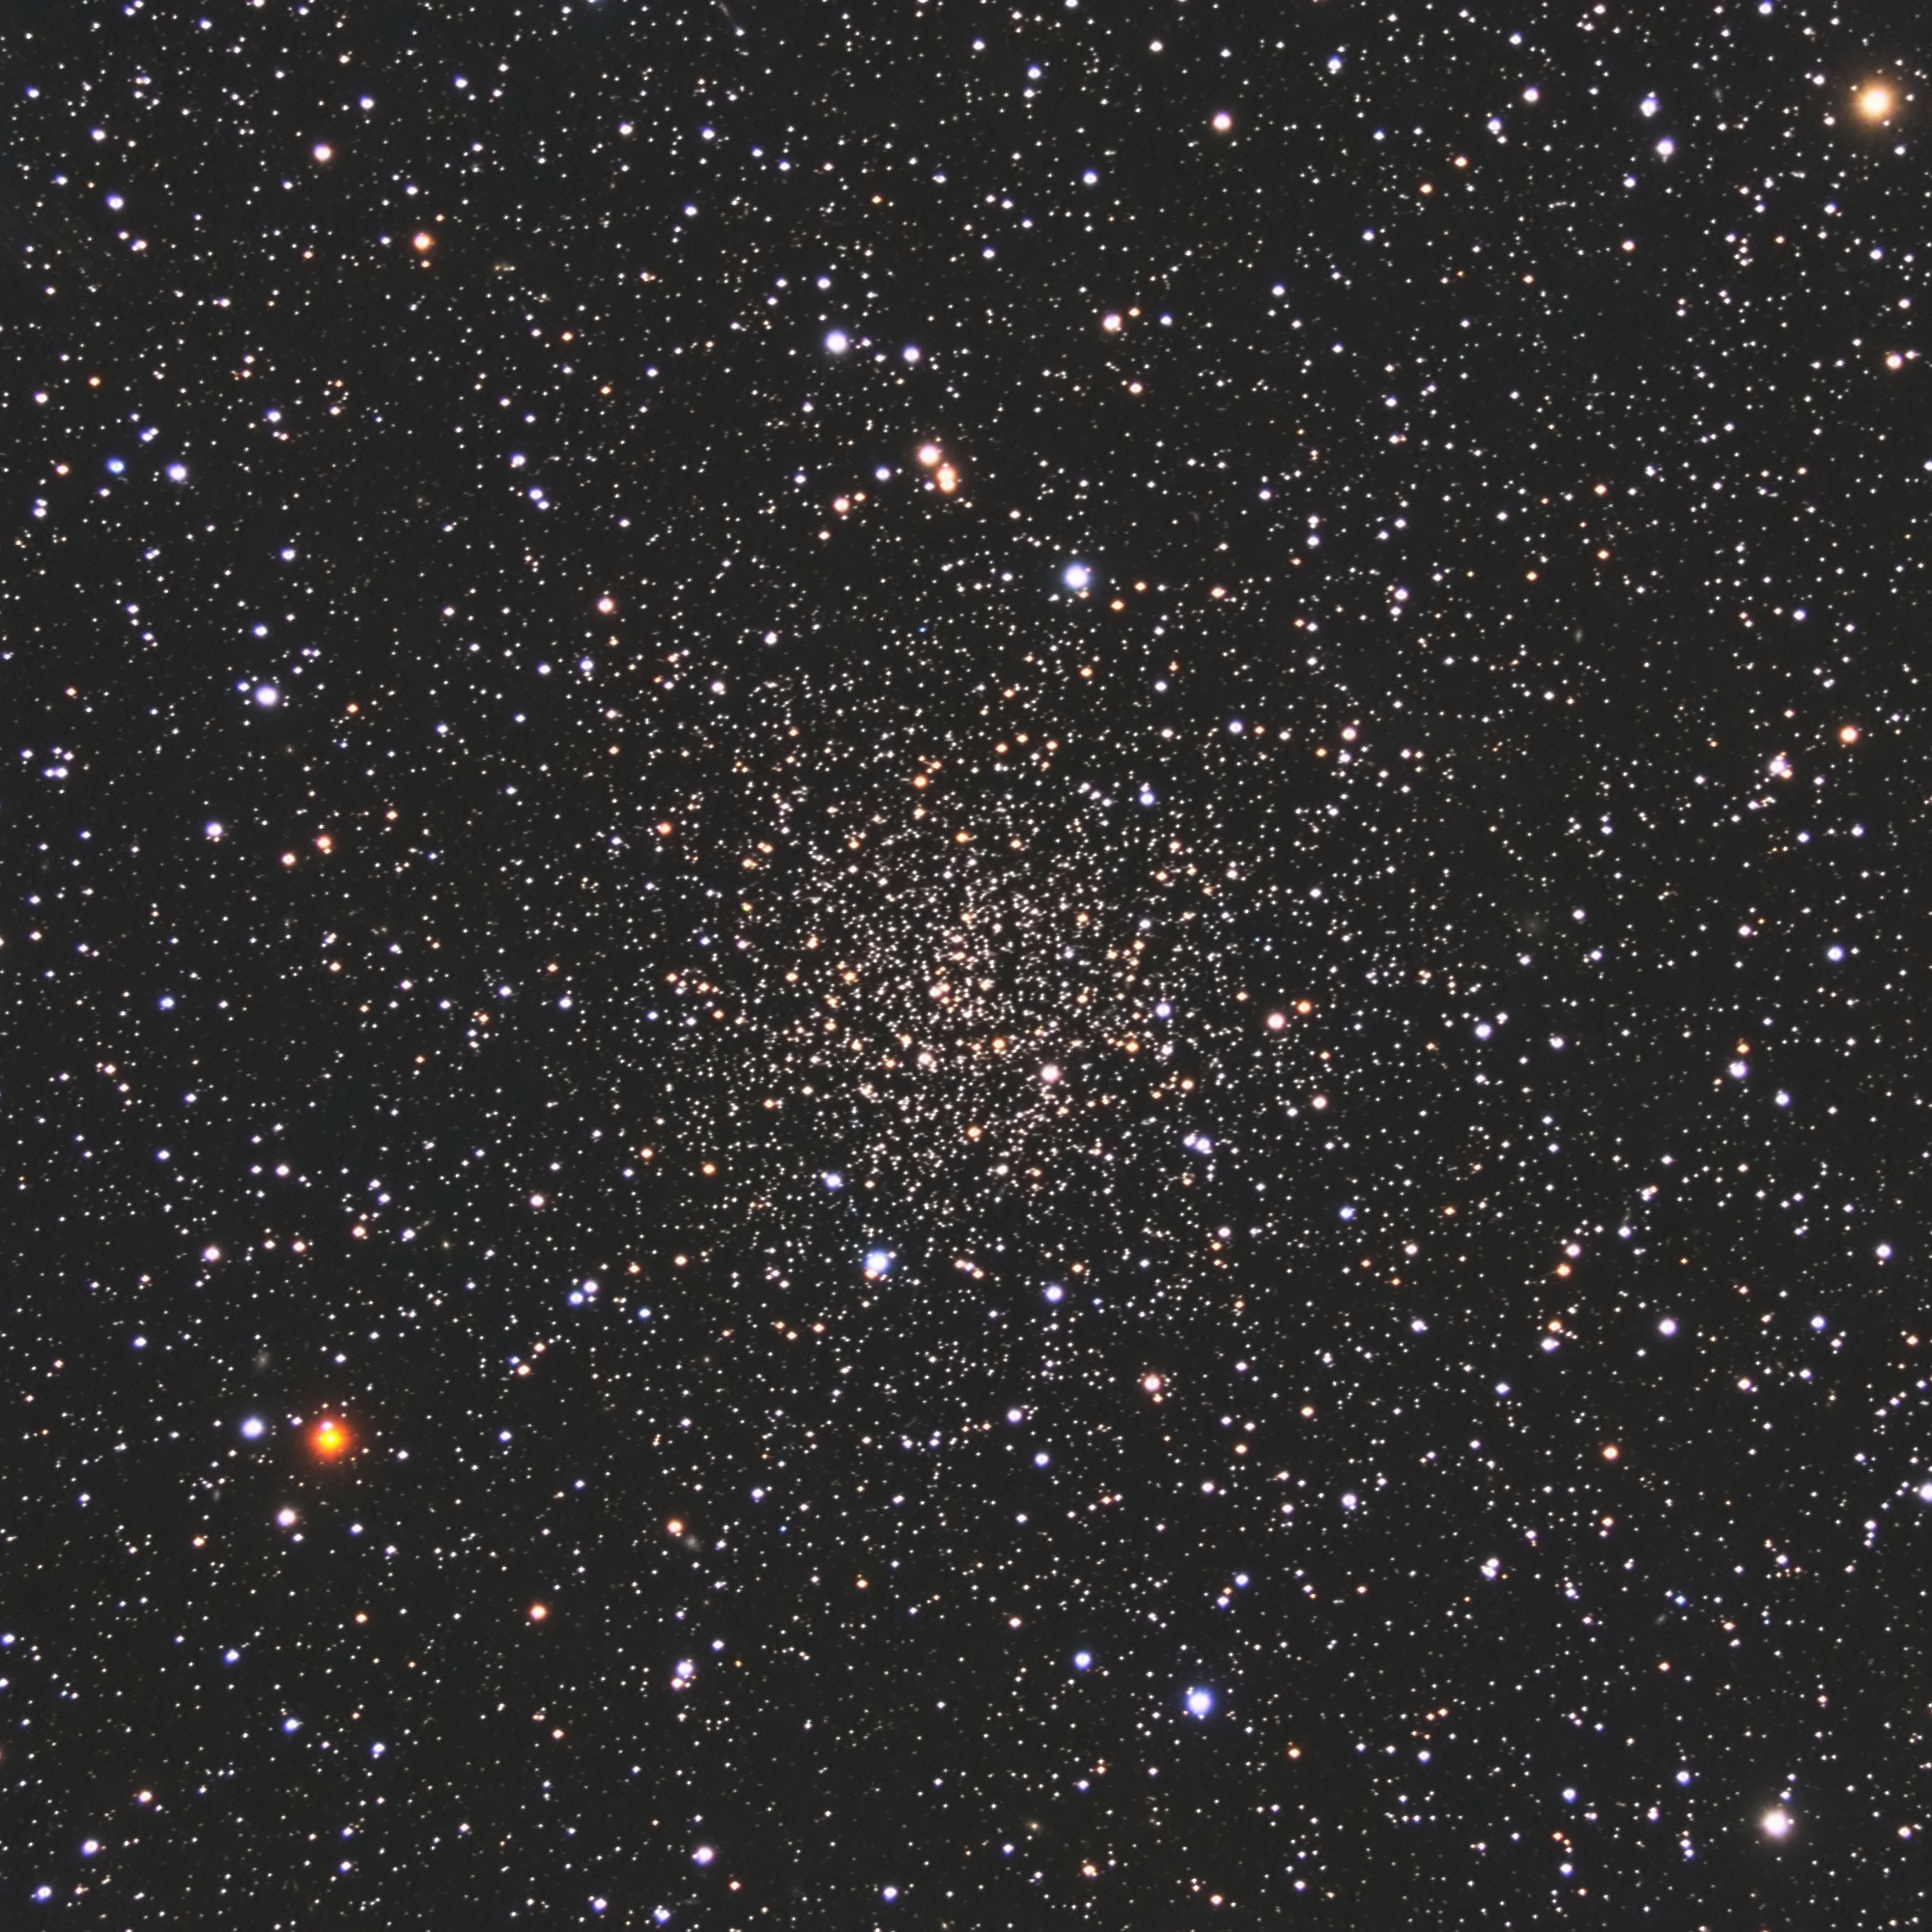 5afc1ad58e6a9_NGC6791.jpg.0f0feff79e9100c1e4ff6cceb20ec548.jpg